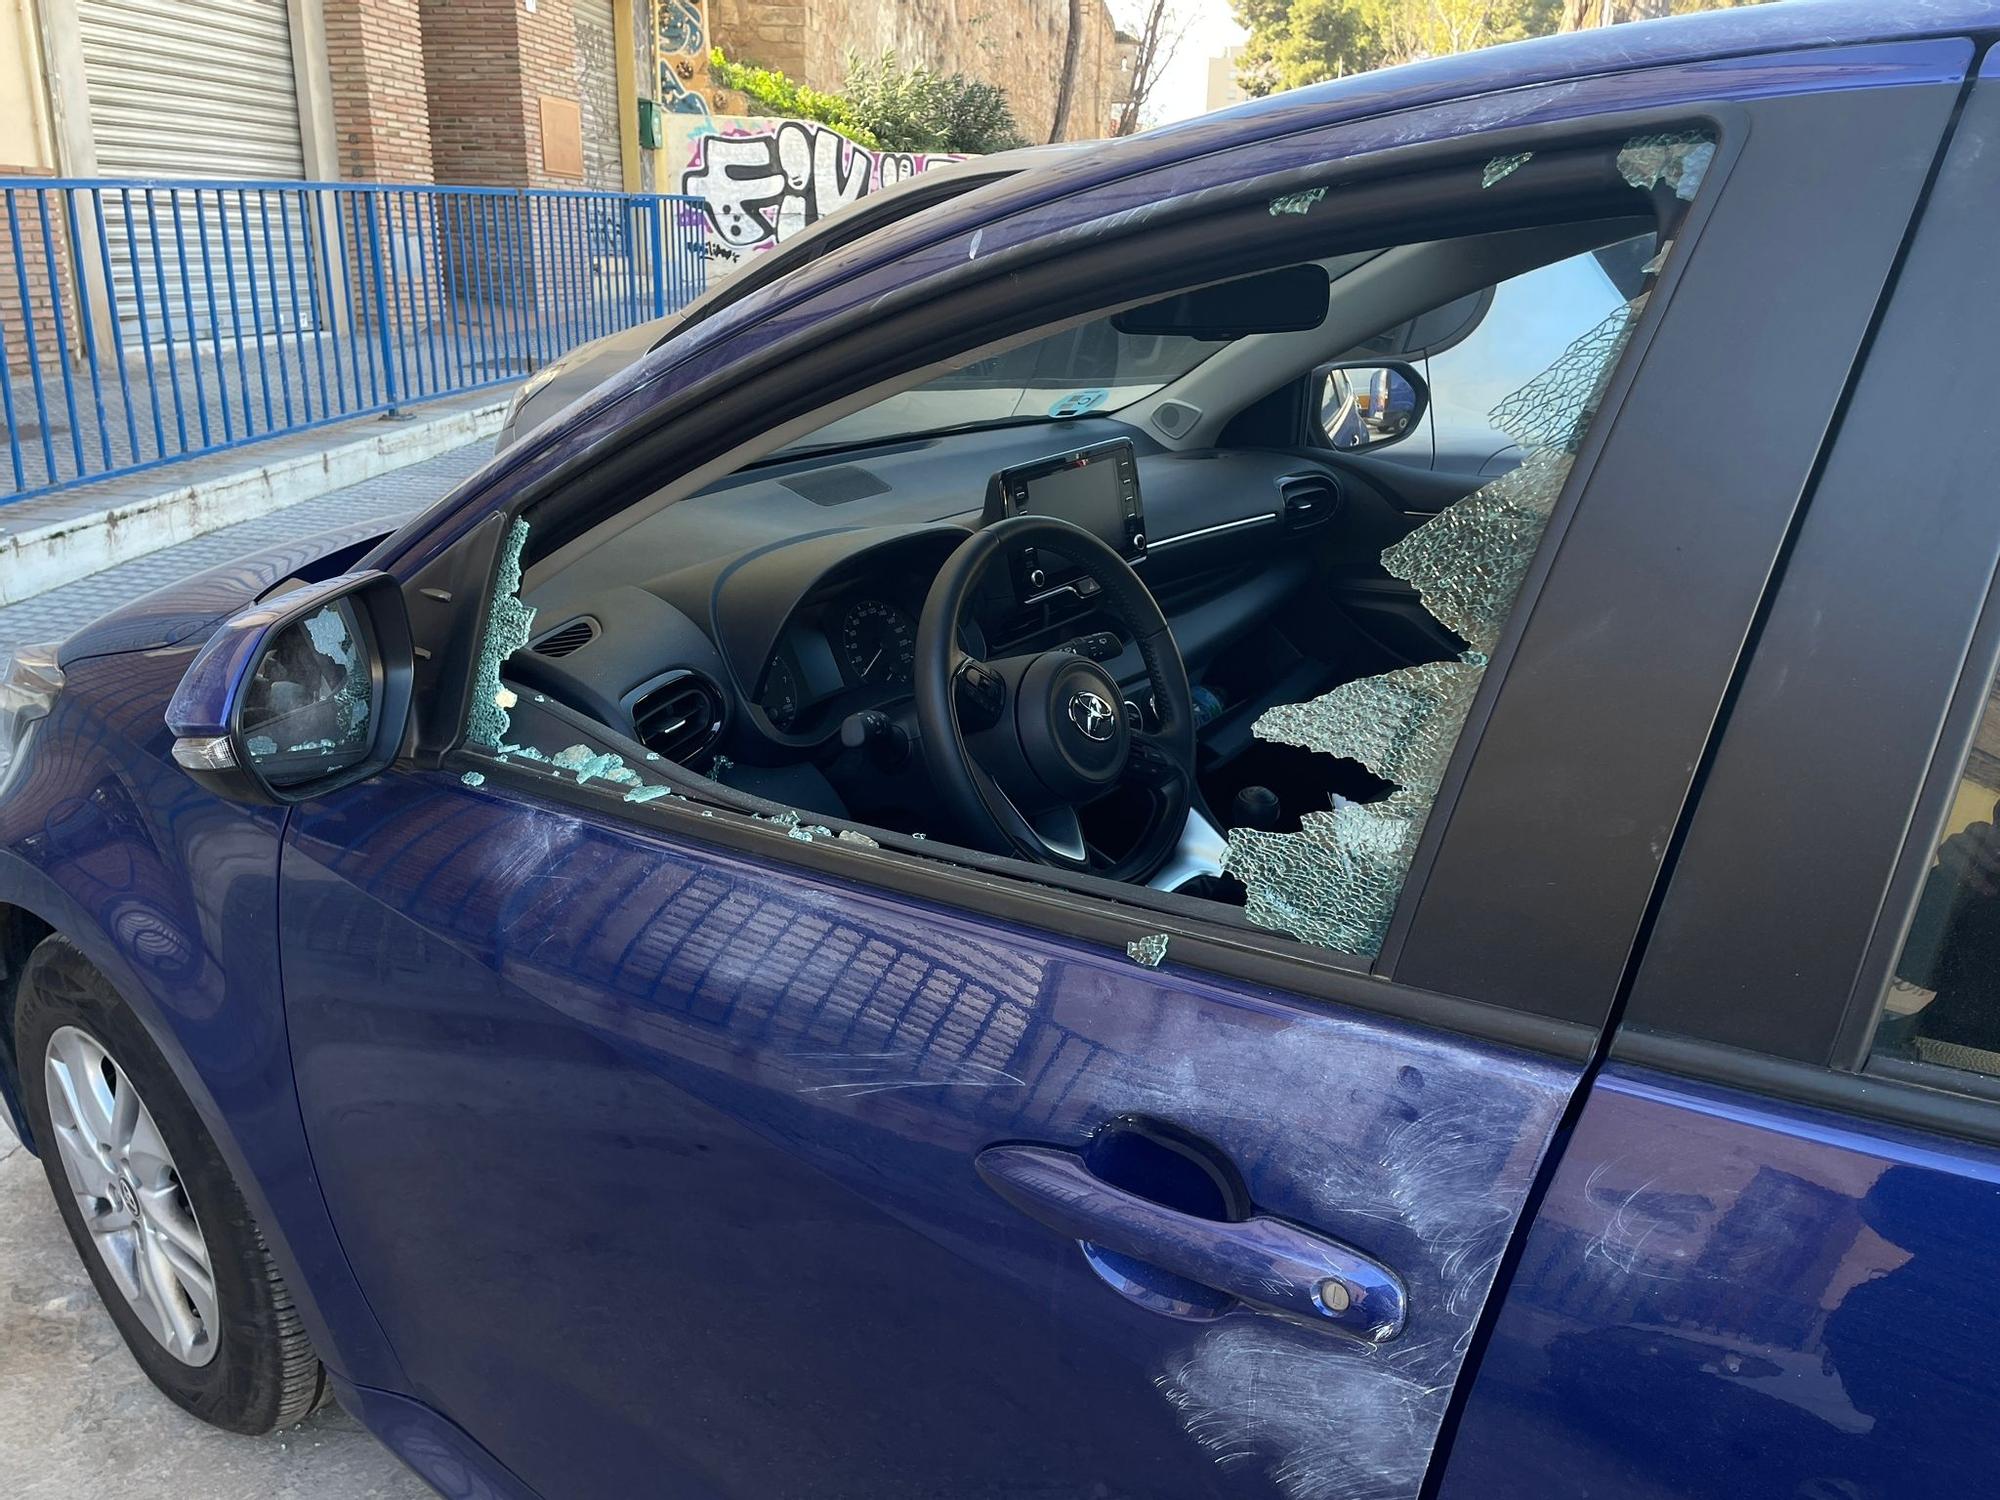 Rompen las ventanillas de más de medio centenar de coches en la barriada de Suárez